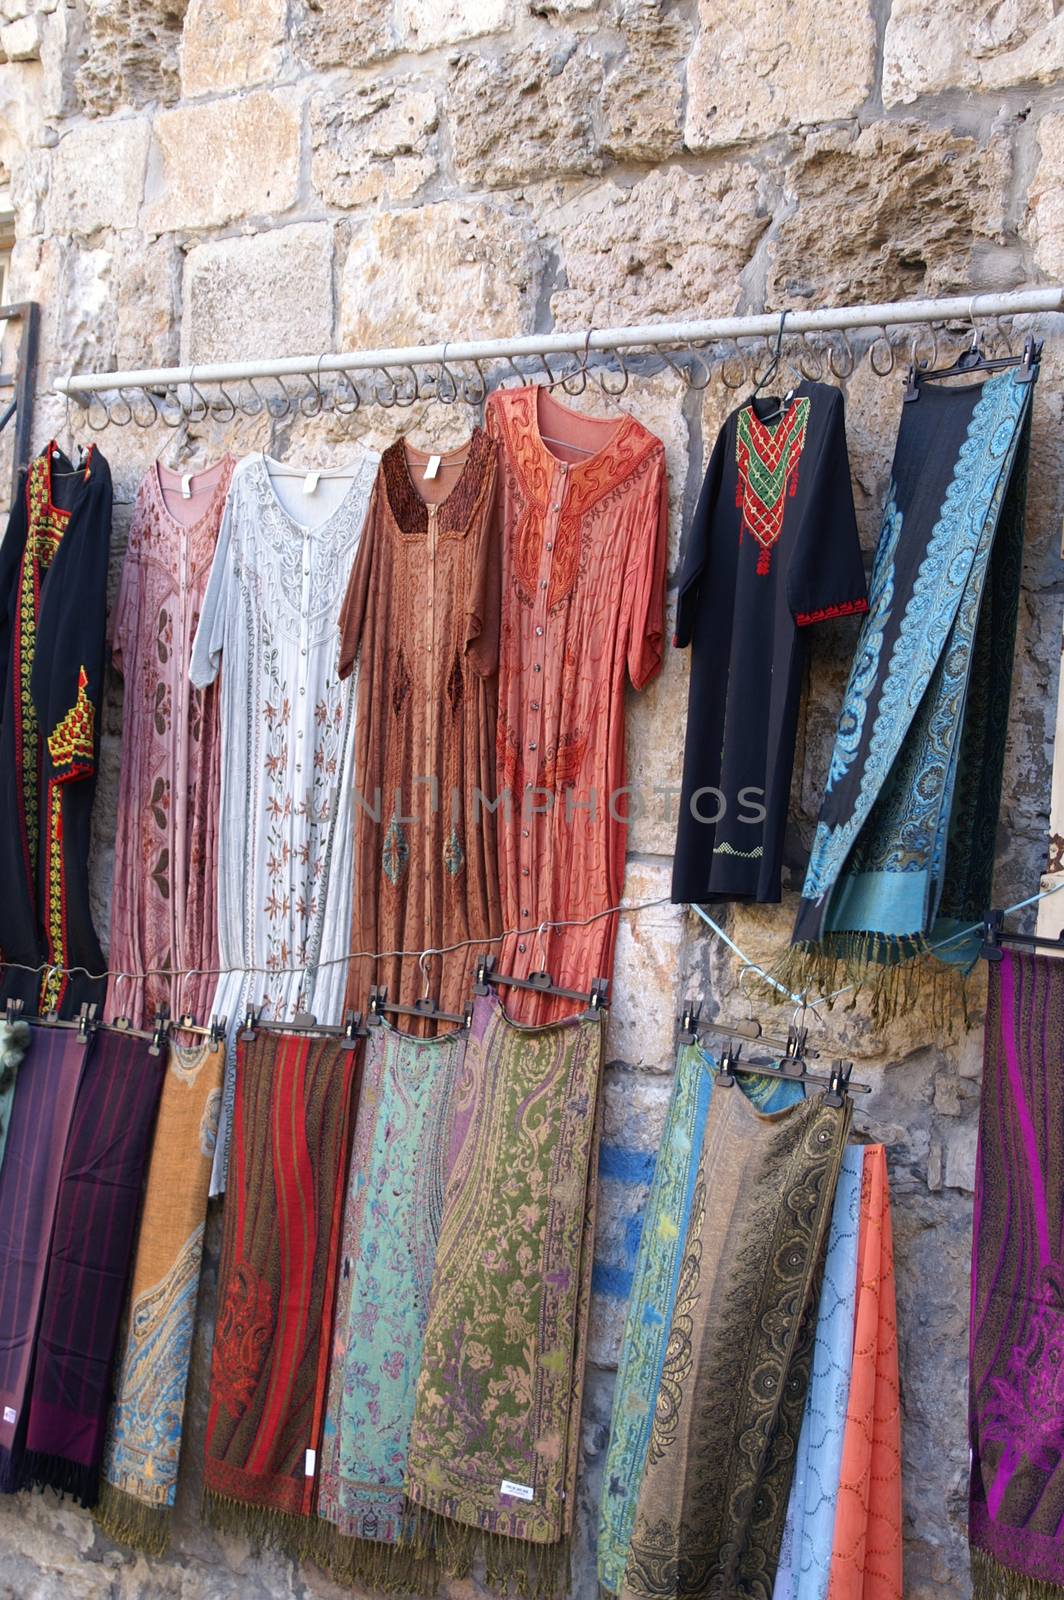 East market in Jerusalem by javax